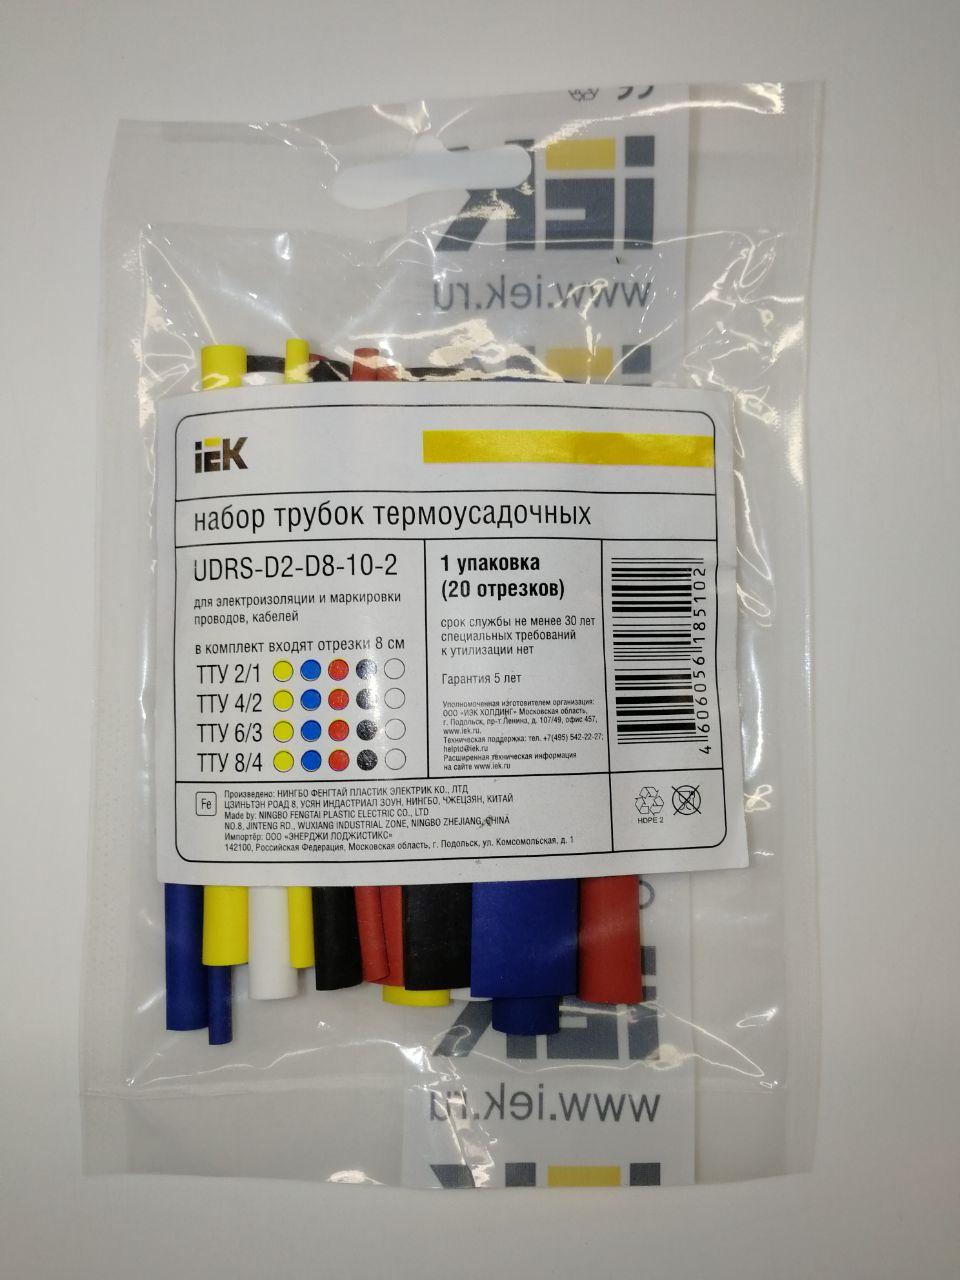 Набор термоусаживаемых трубок ТУТ IEK, 2:1, 20 шт. x 8 см, желтый, желто-зеленый, синий, красный, черный, белый (UDRS-D2-D8-10-2)